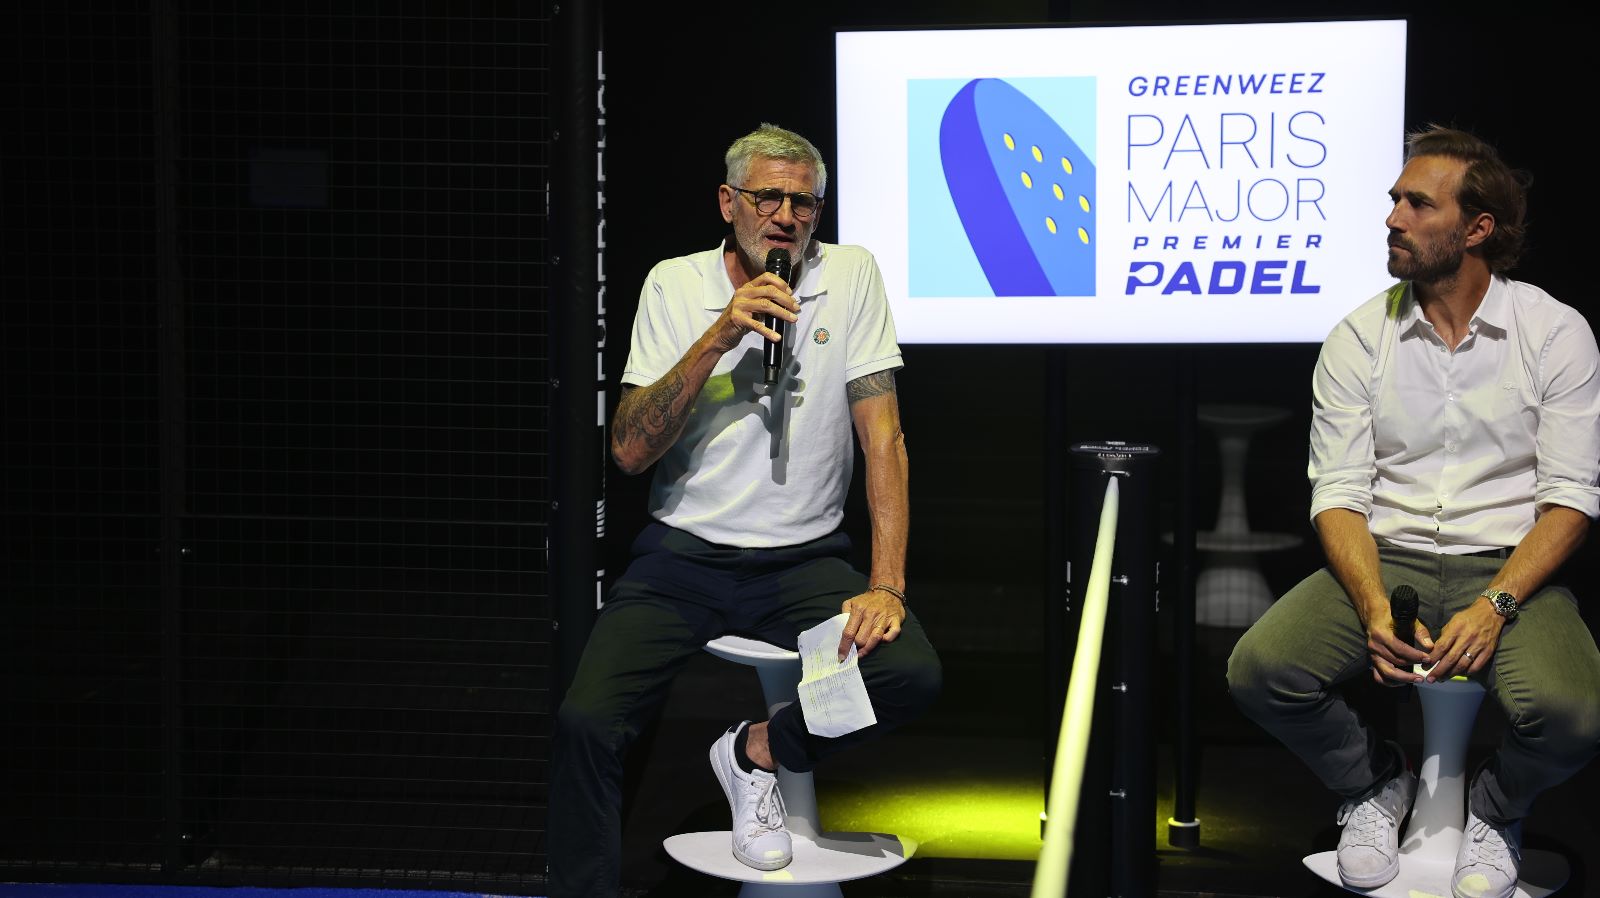 Gilles Moretton: “Los clubs de tenis se han vuelto a convertir en lugares para vivir gracias a la padel"